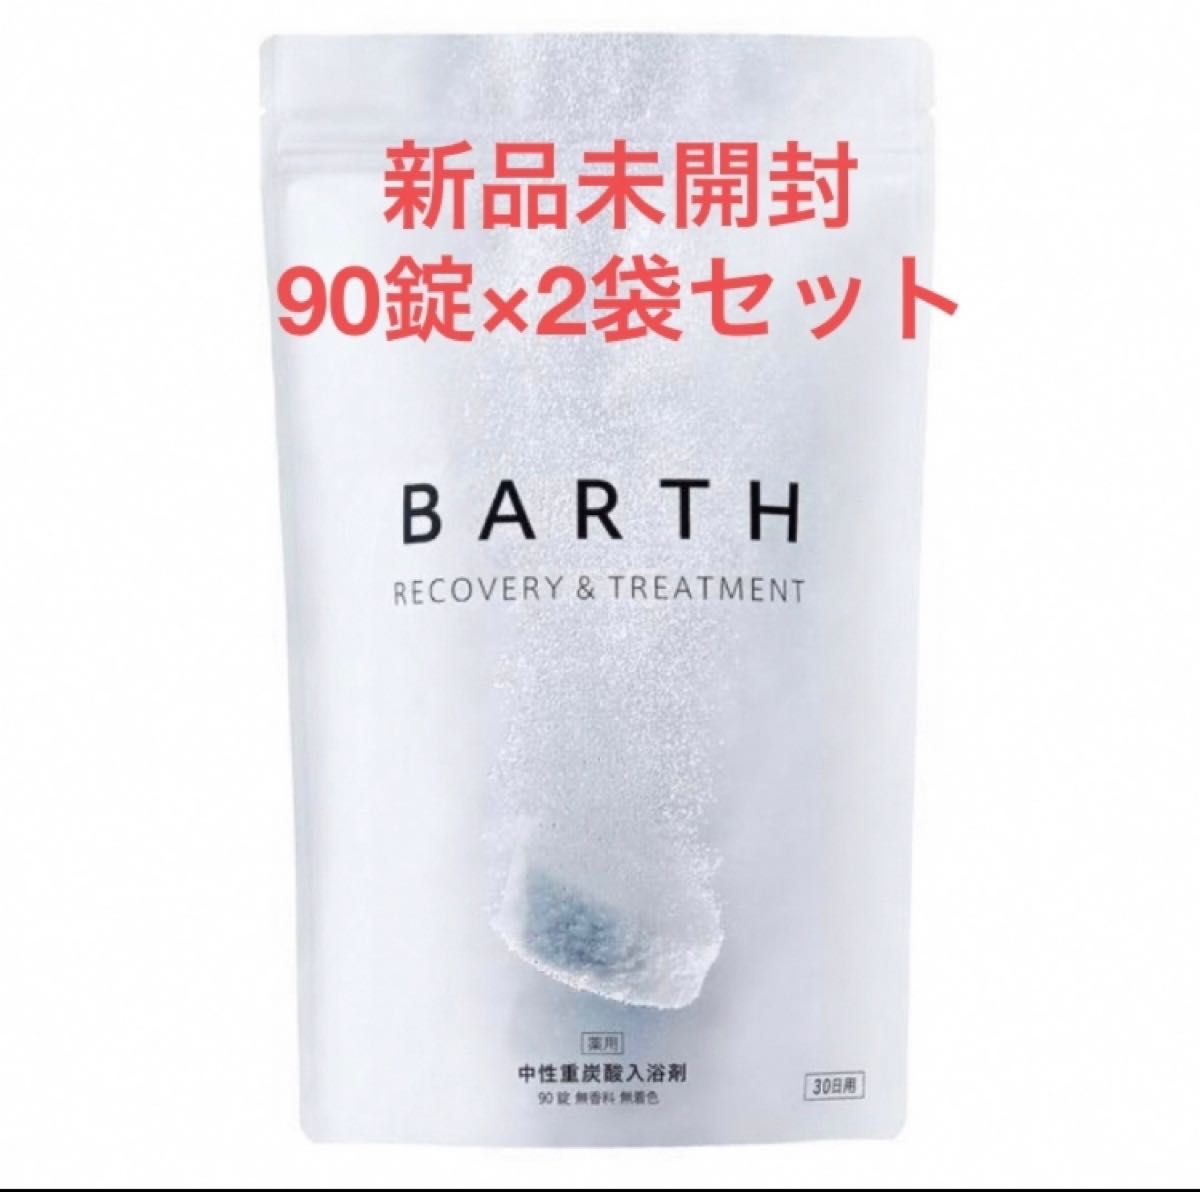 新品未開封 薬用 BARTH 中性重炭酸入浴剤 90錠×2袋セット 医薬部外品 バスソルト 固形